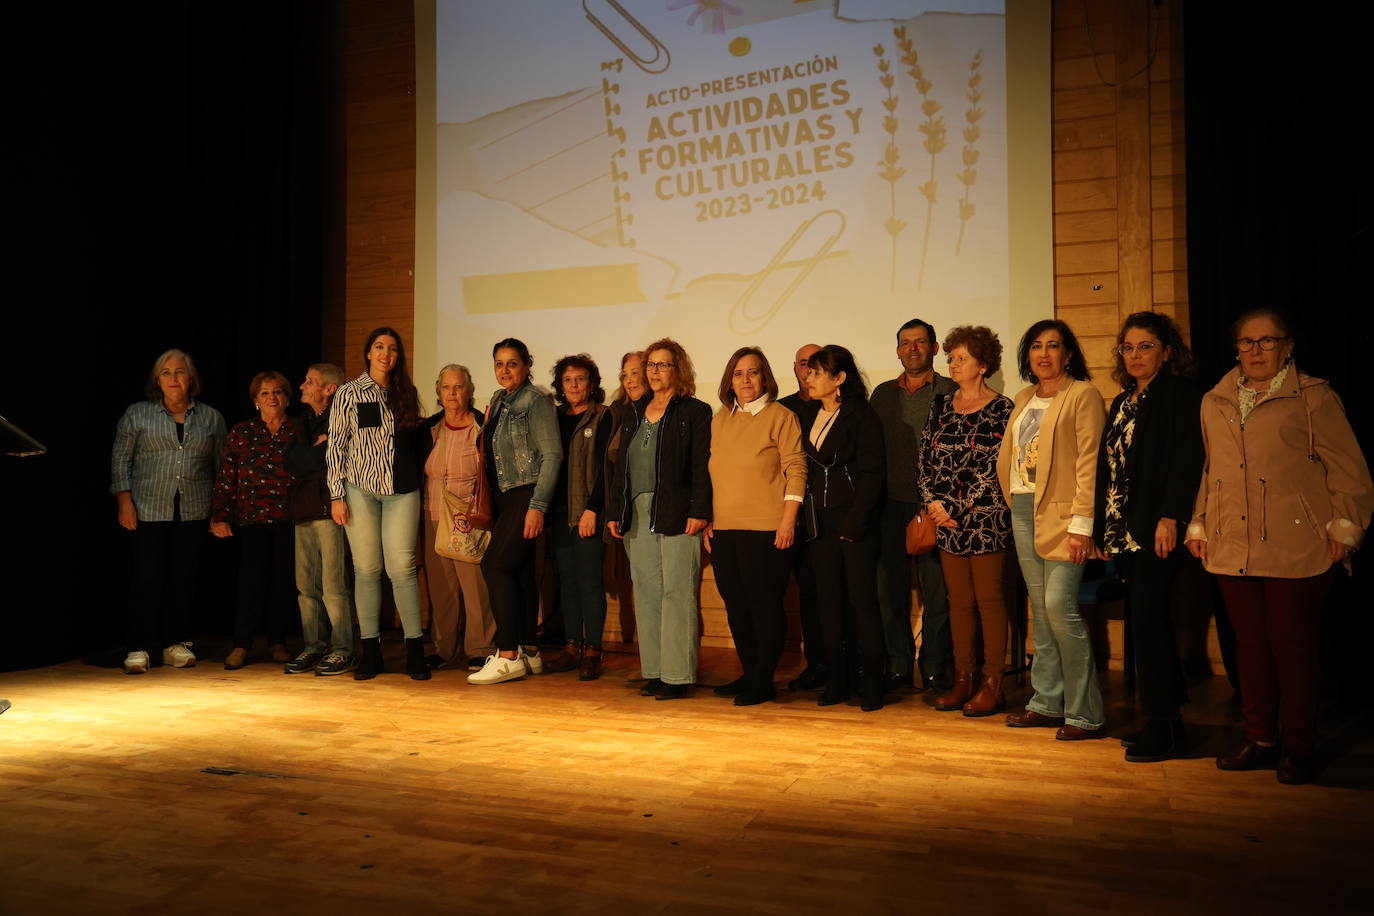 Gala de presentación formativa y cultural